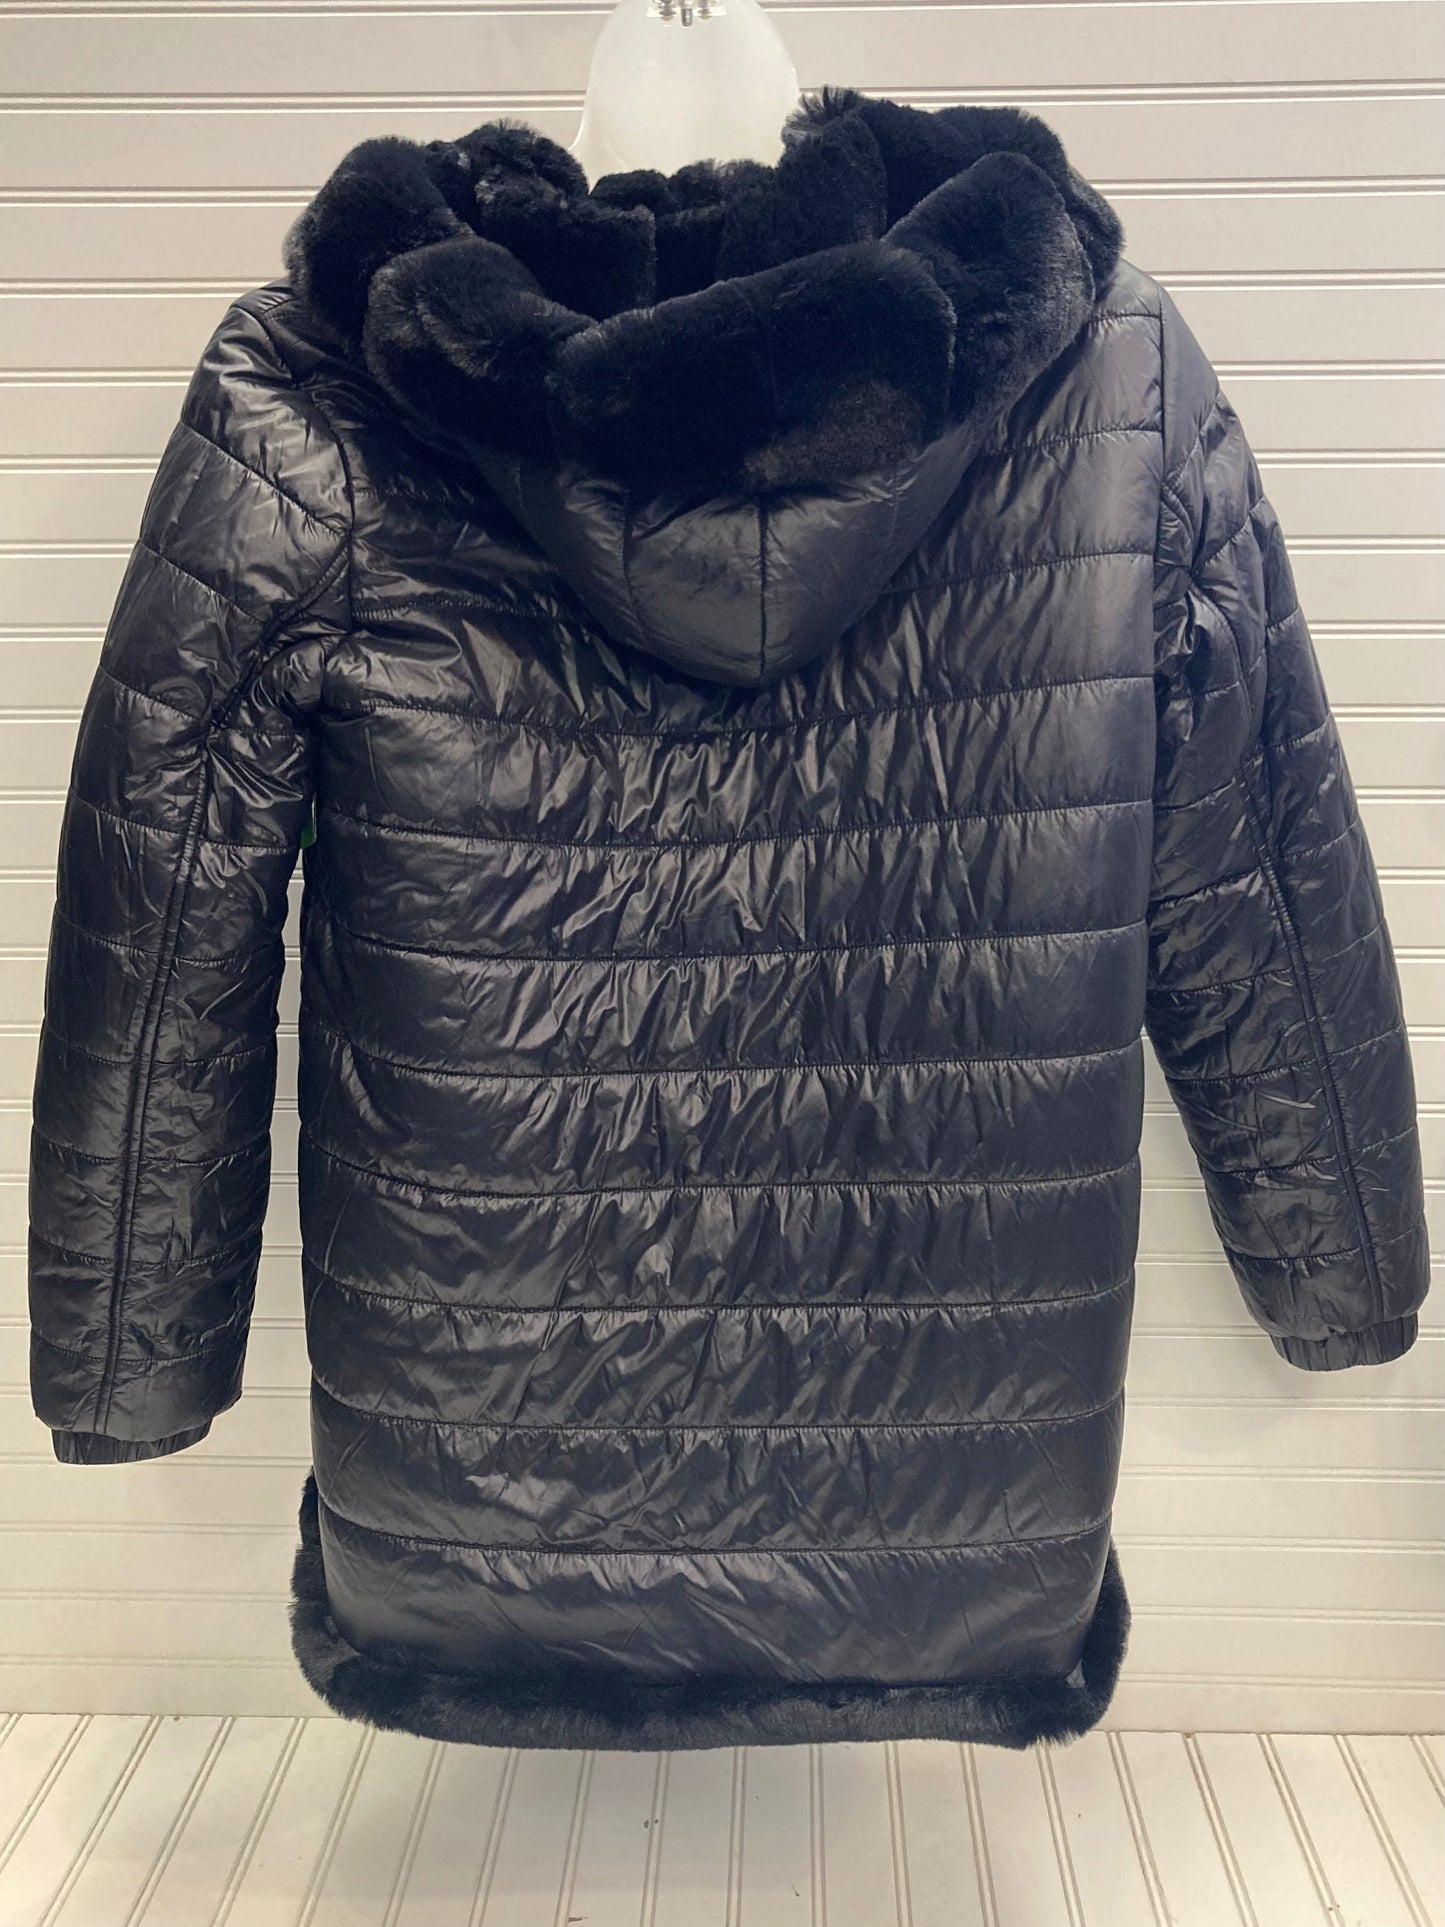 Jacket Faux Fur & Sherpa By Metric Knits  Size: Xl